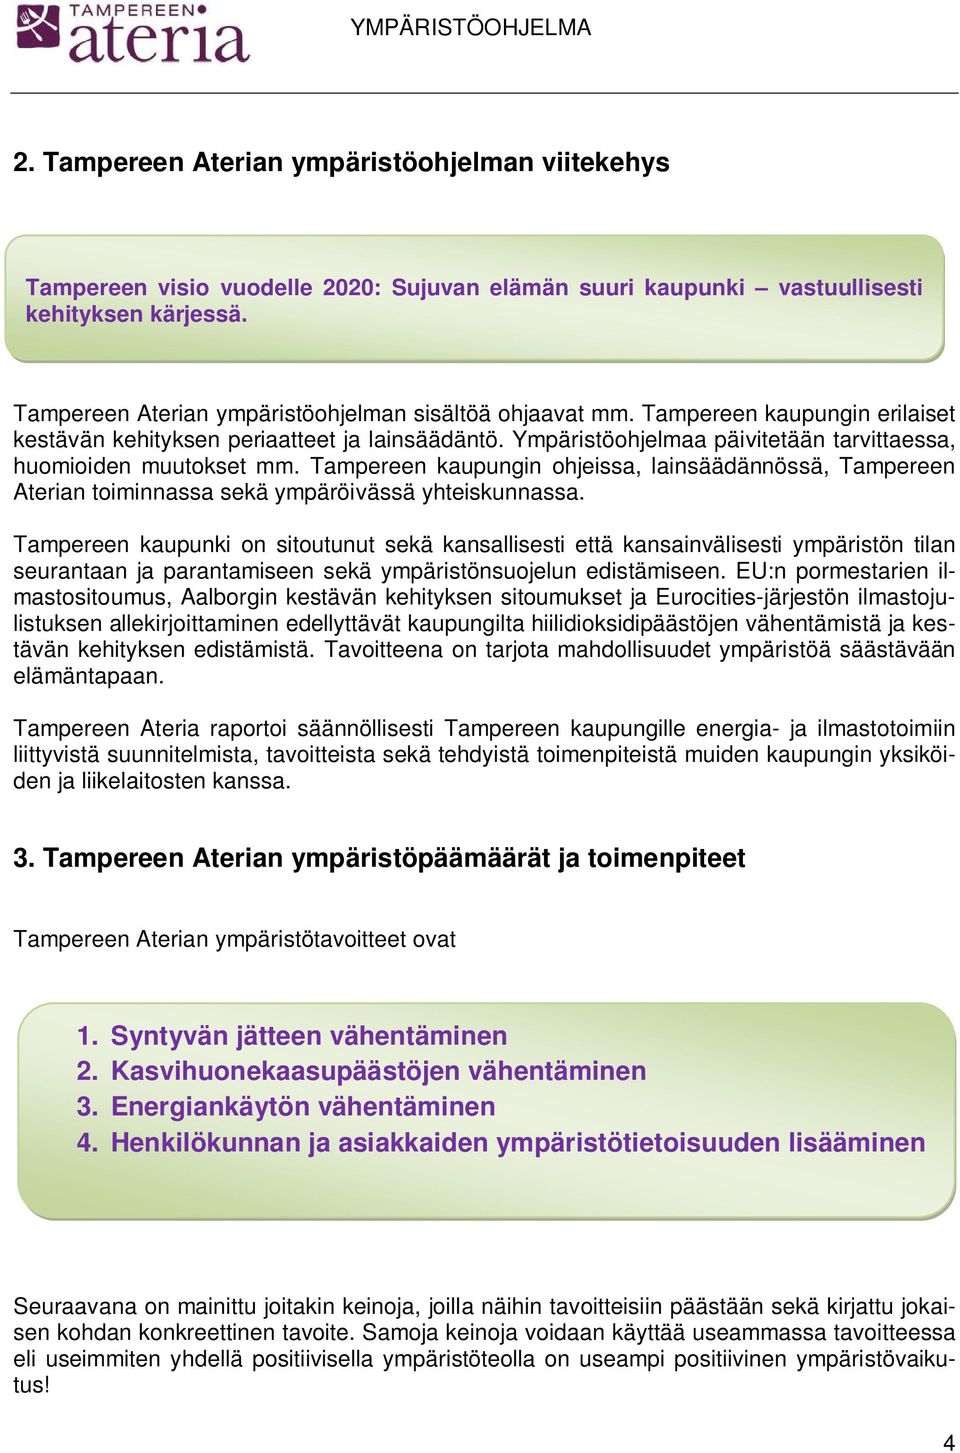 Ympäristöohjelmaa päivitetään tarvittaessa, huomioiden muutokset mm. Tampereen kaupungin ohjeissa, lainsäädännössä, Tampereen Aterian toiminnassa sekä ympäröivässä yhteiskunnassa.